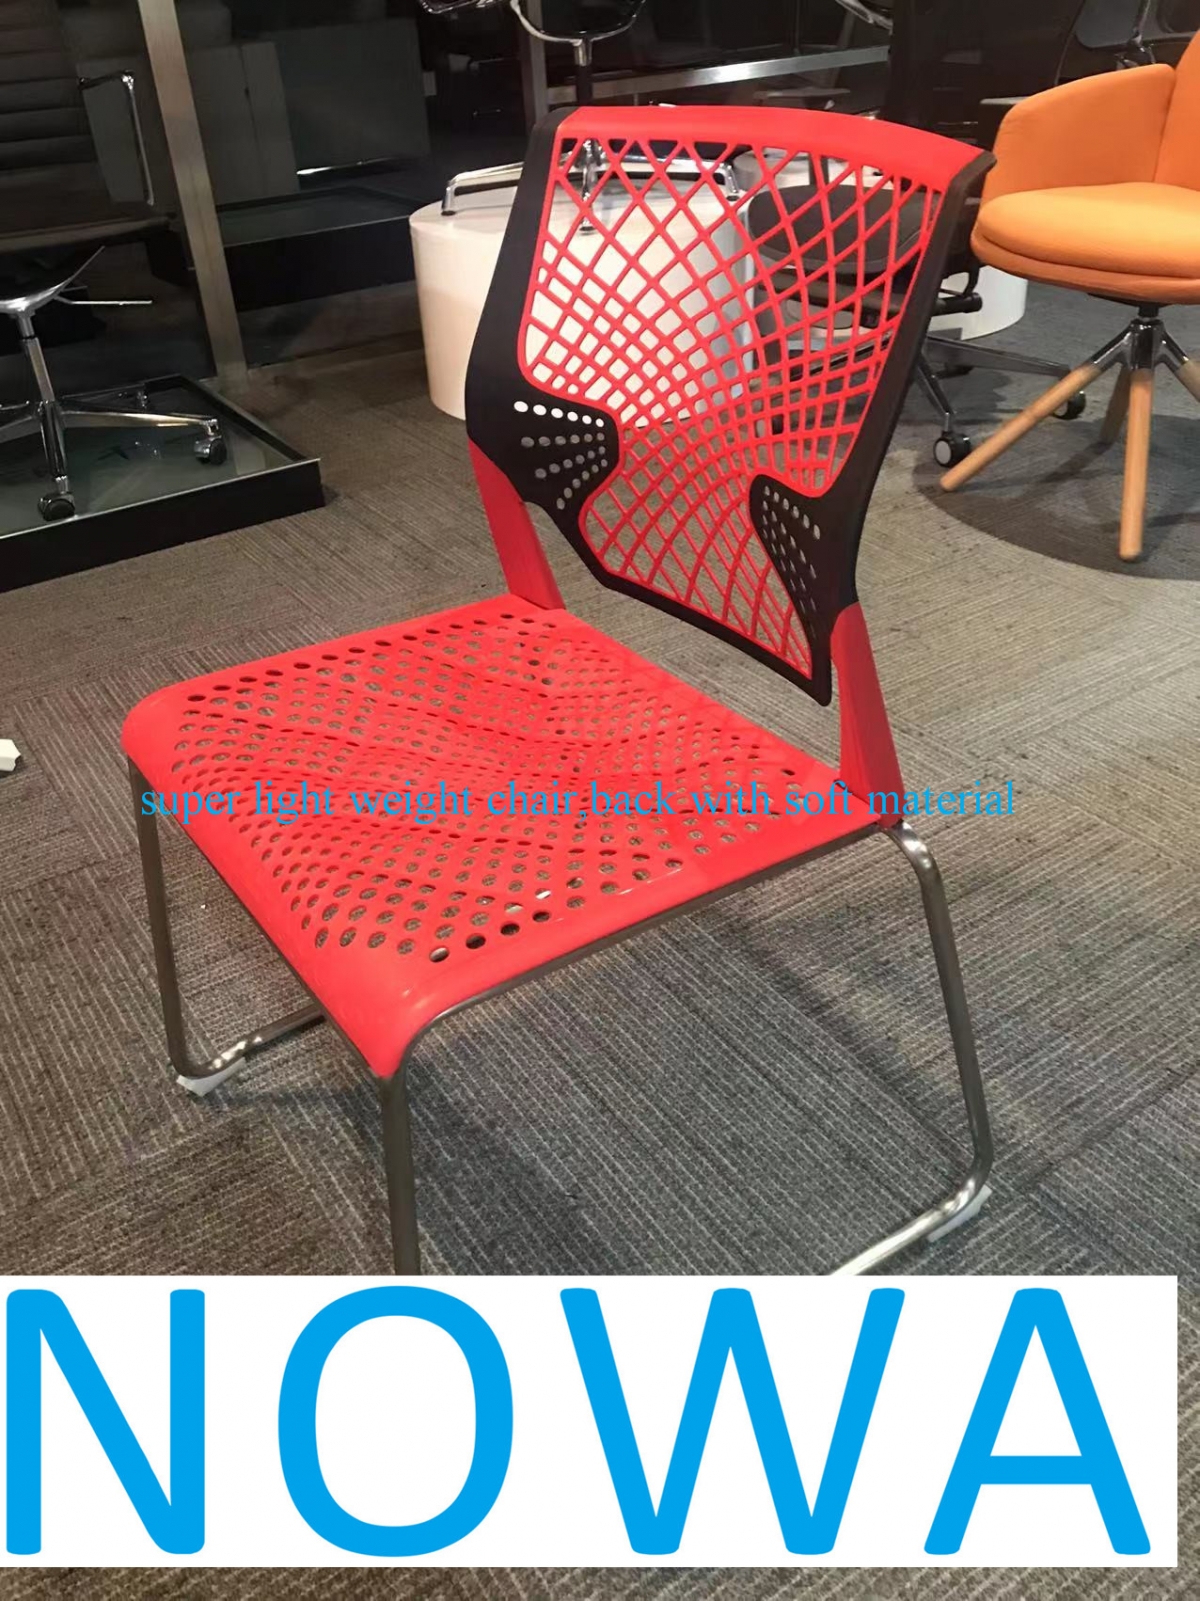 2022 កៅអី PP រចនាដ៏ល្អបំផុតមួយសម្រាប់កន្លែងសាធារណៈដោយប្រើ-NOWA-China Office Furniture, គ្រឿងសង្ហារឹមដែលផលិតតាមតម្រូវការរបស់ប្រទេសចិន,